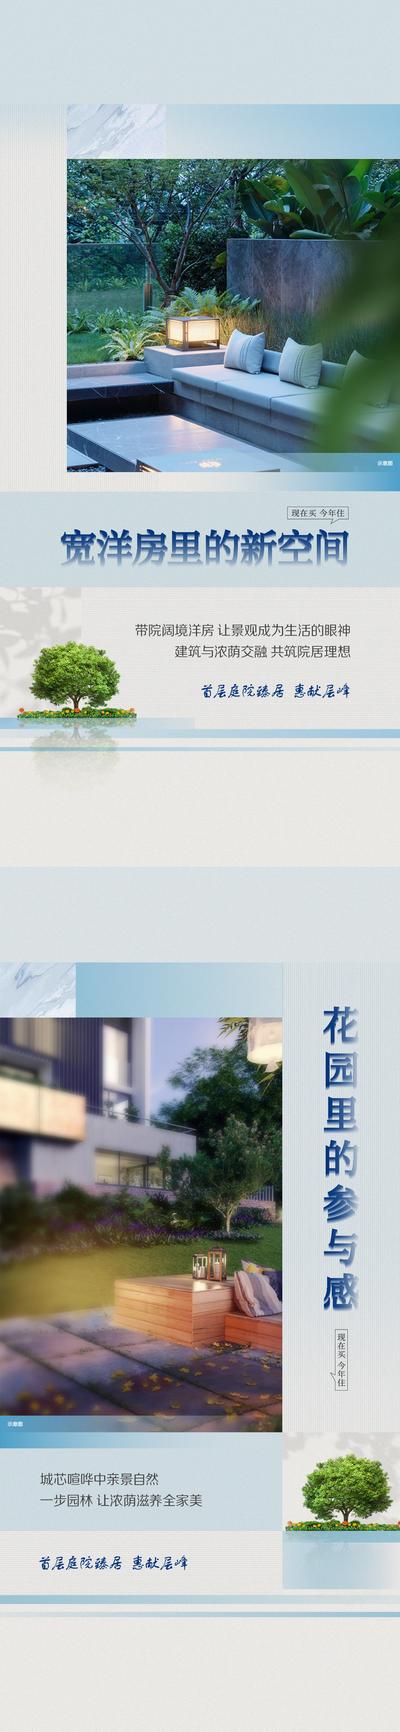 南门网 广告 海报 地产 庭院 园林 系列 社区